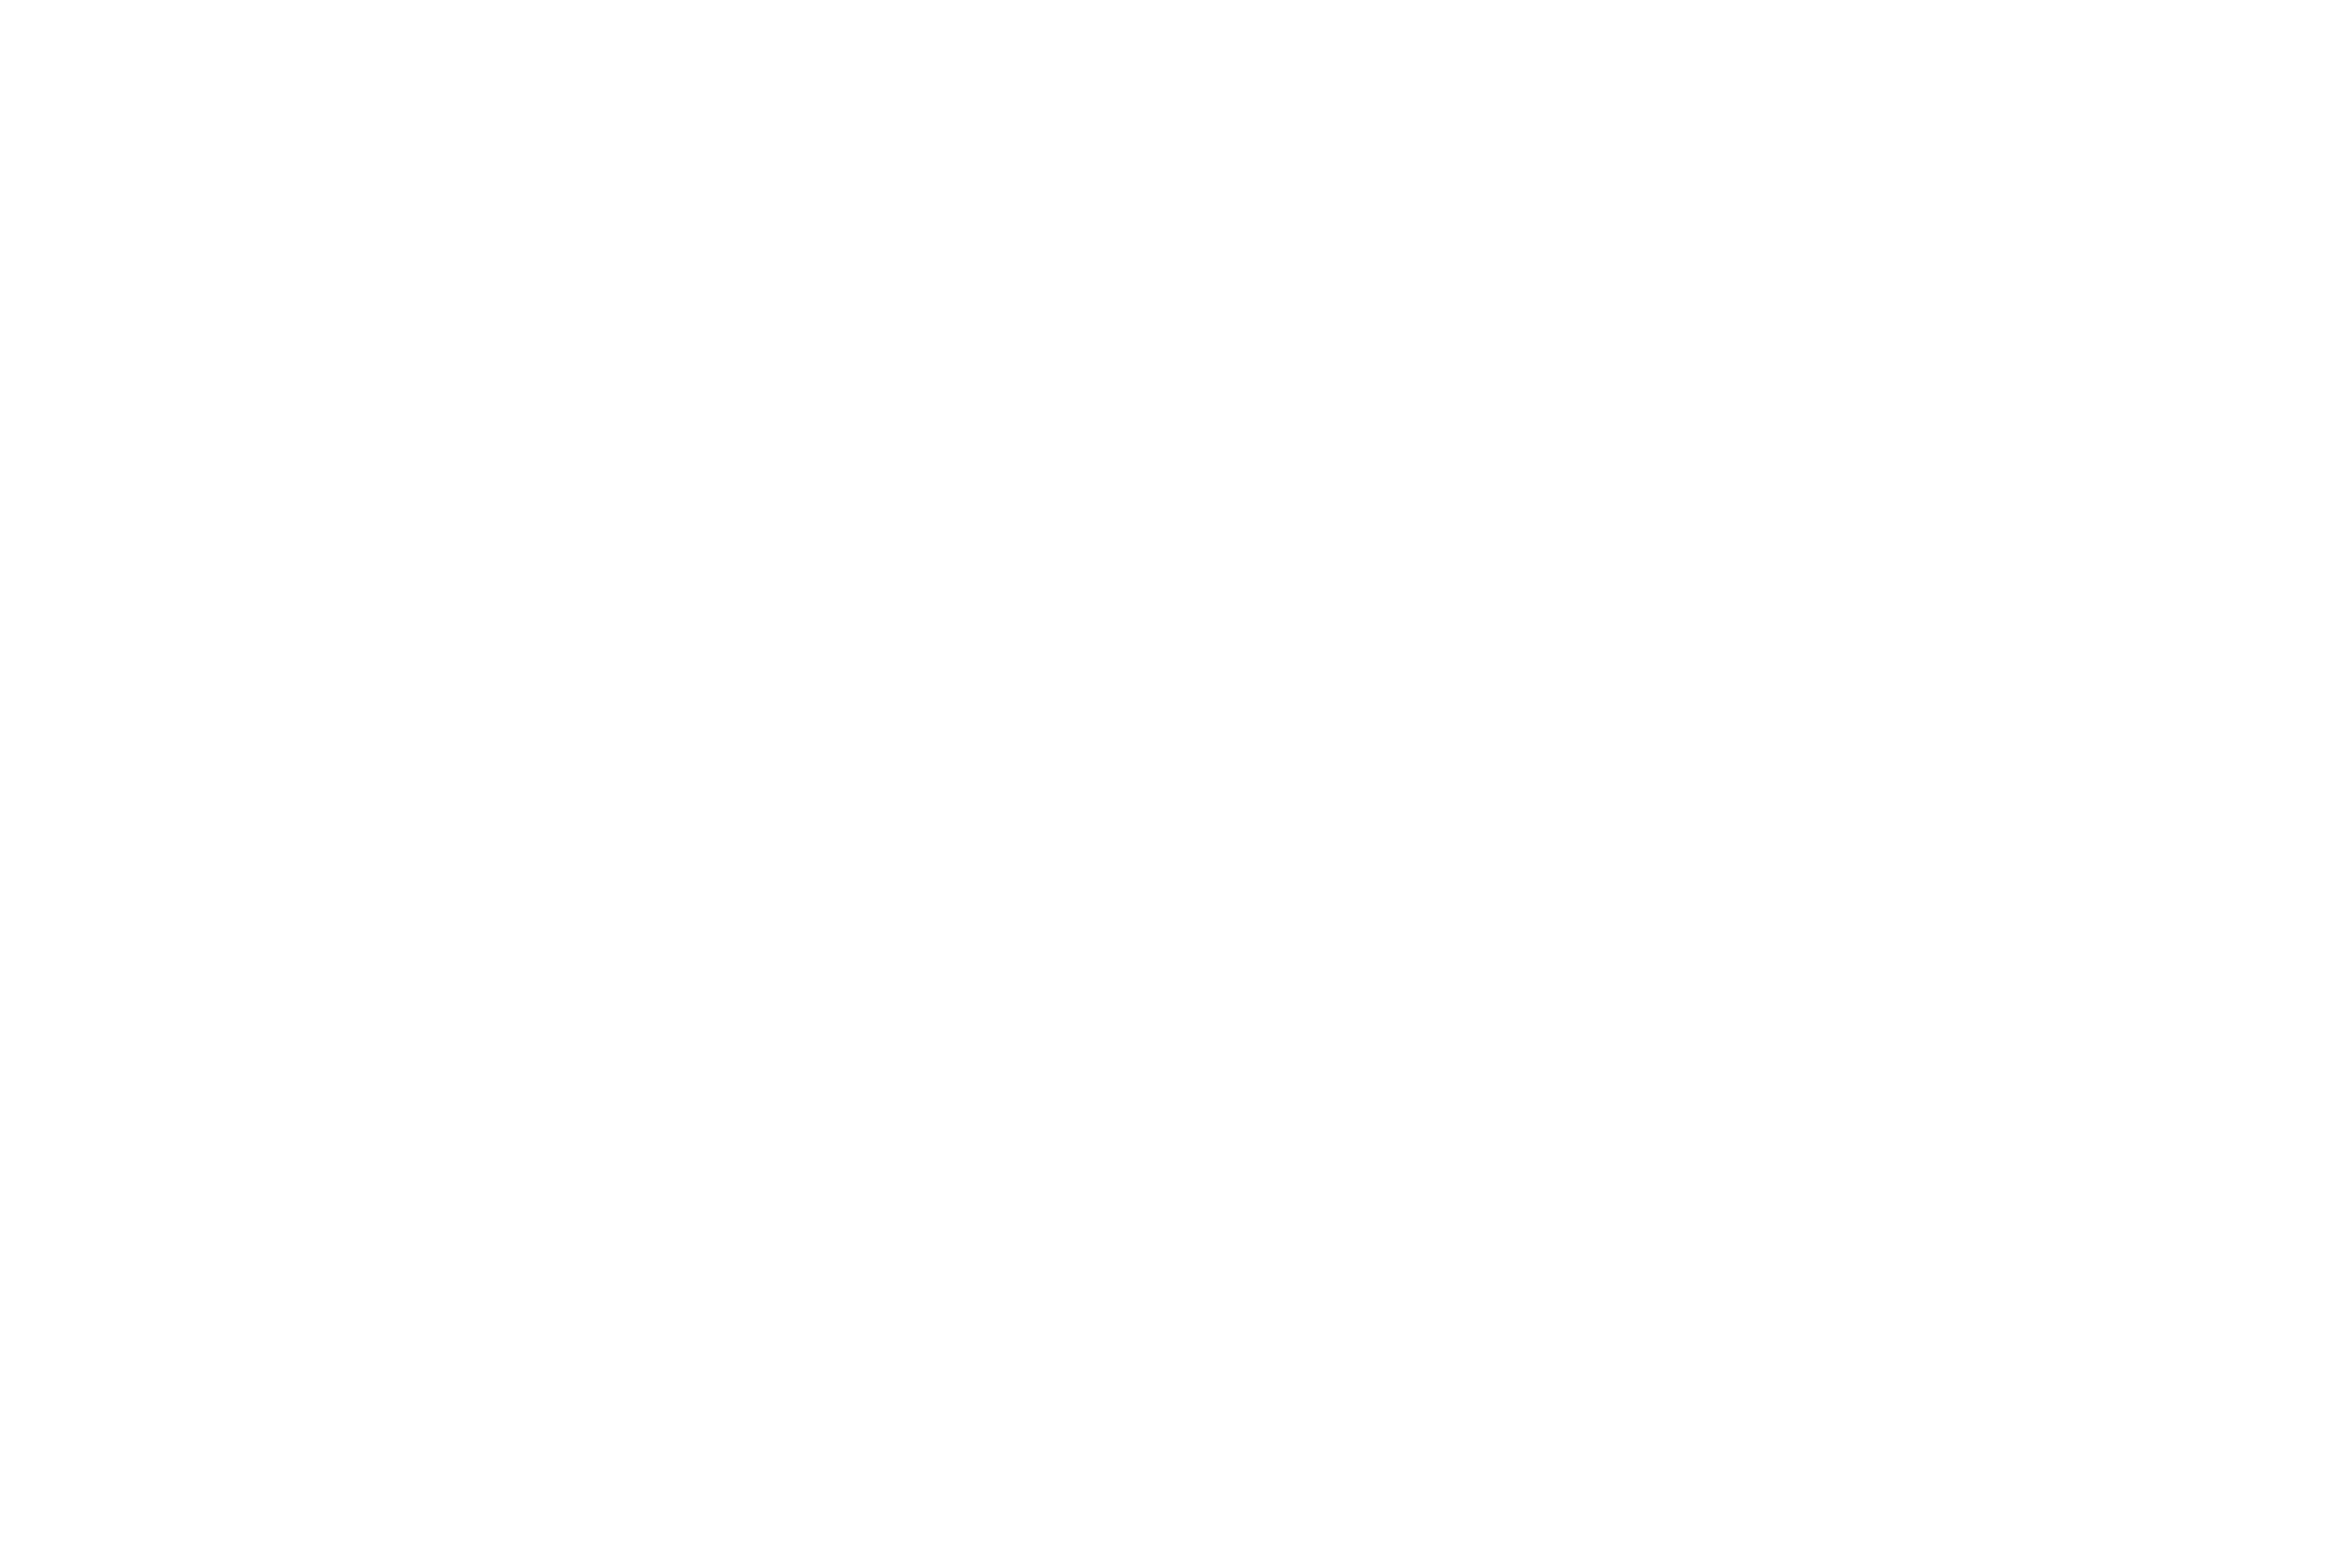 KOTA Barber Company